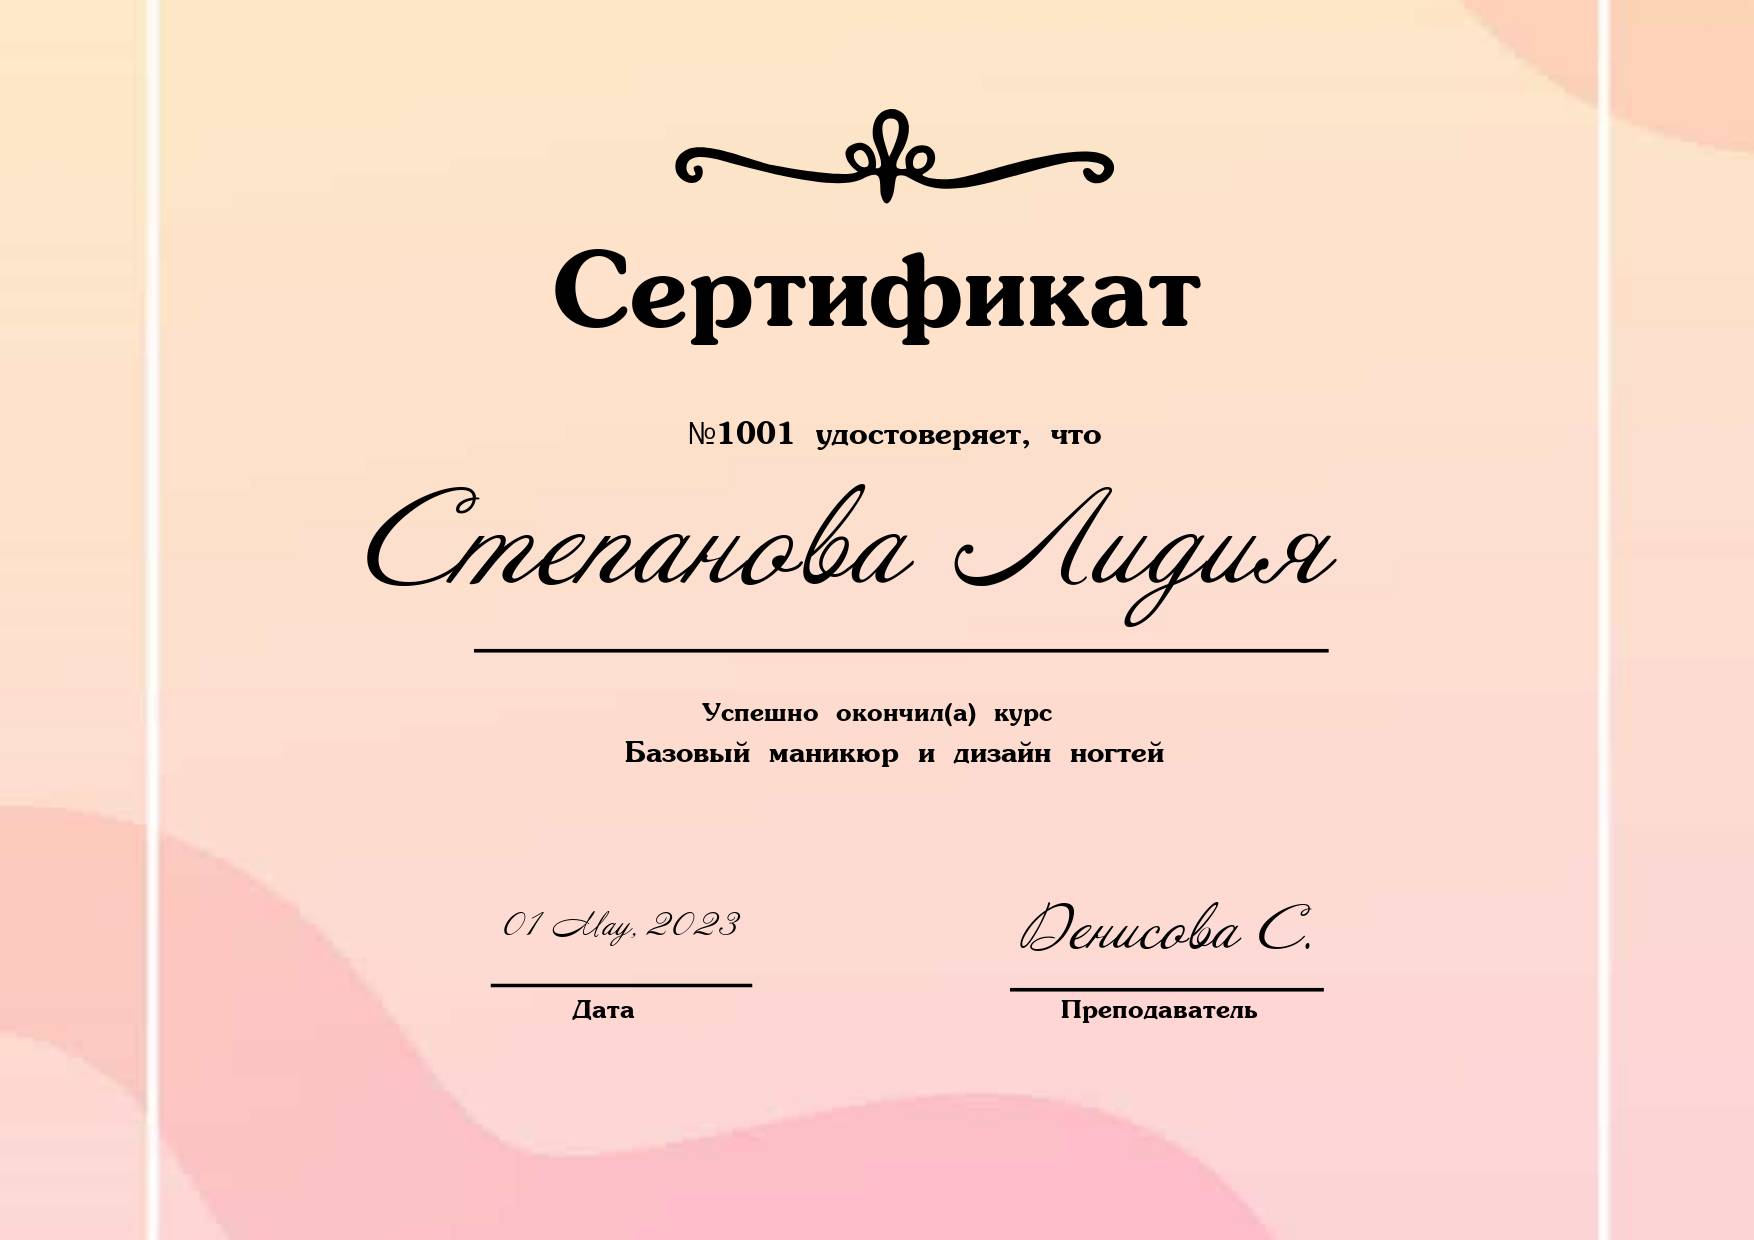 Светлый сертификат с полупрозрачным розово-бежевым фоном